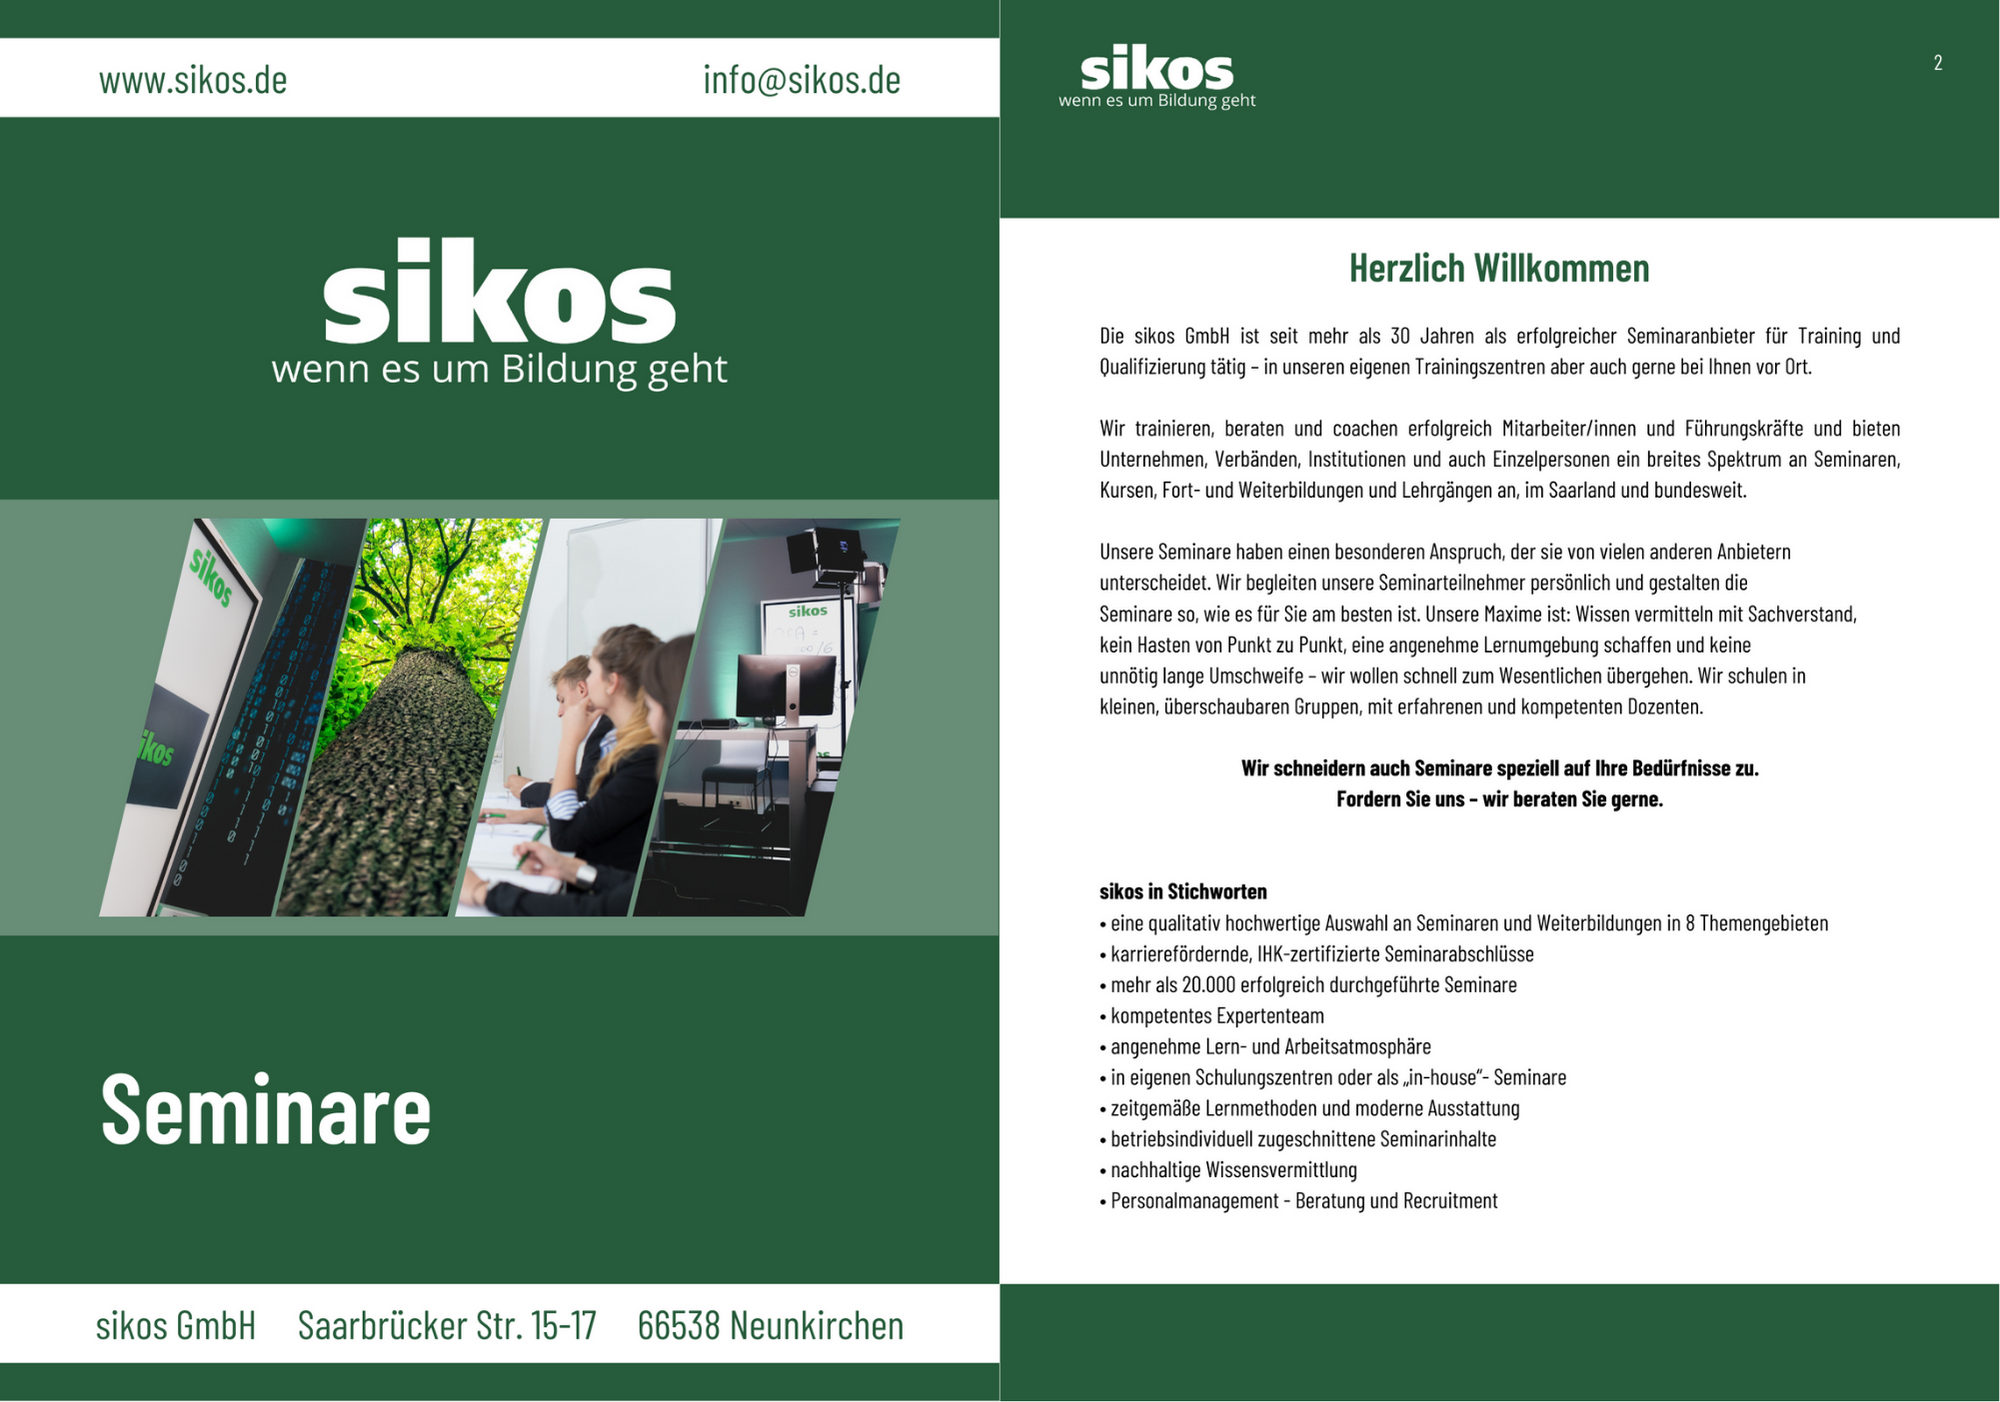 Das neue Seminarheft ist da! Das Angebot der sikos GmbH finden Sie jetzt in der übersichtlichen Broschüre - auch als Druck verfügbar!